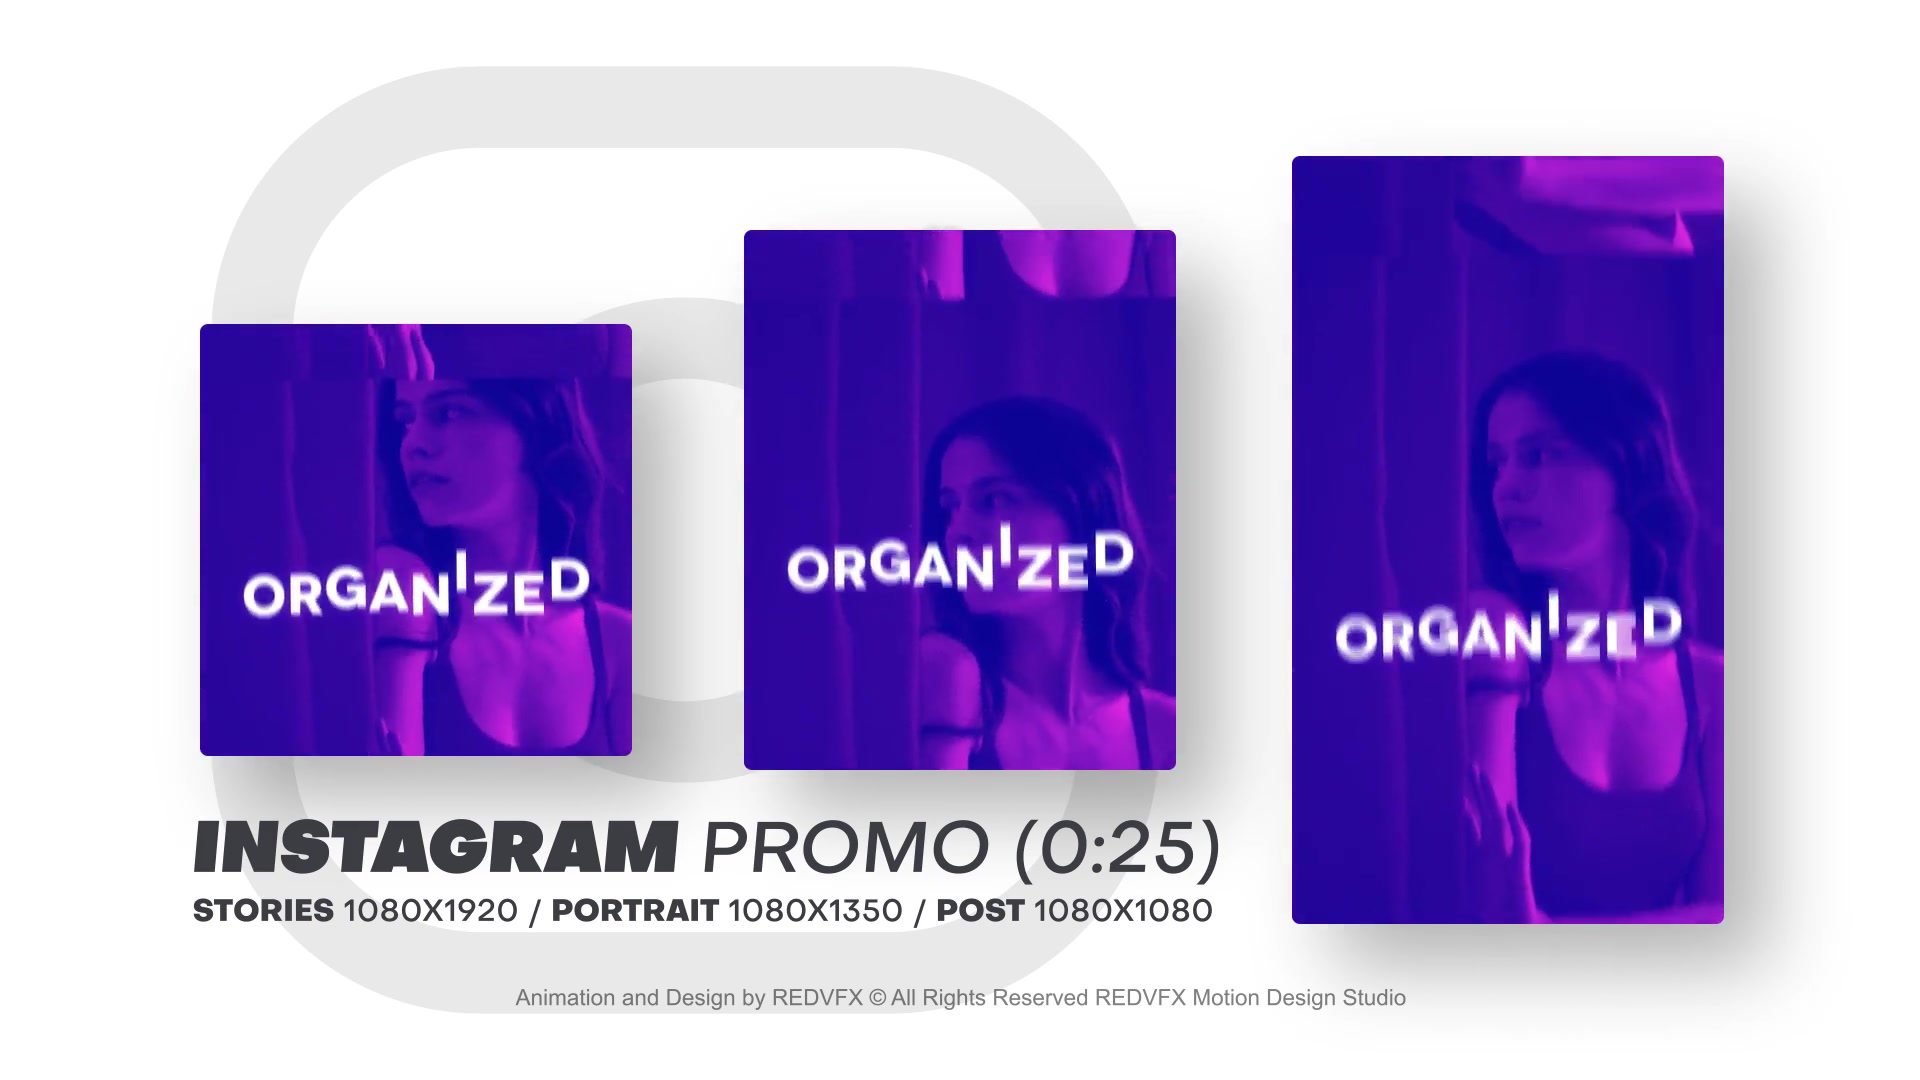 Instagram Promo for Premiere Pro Videohive 36478083 Premiere Pro Image 10